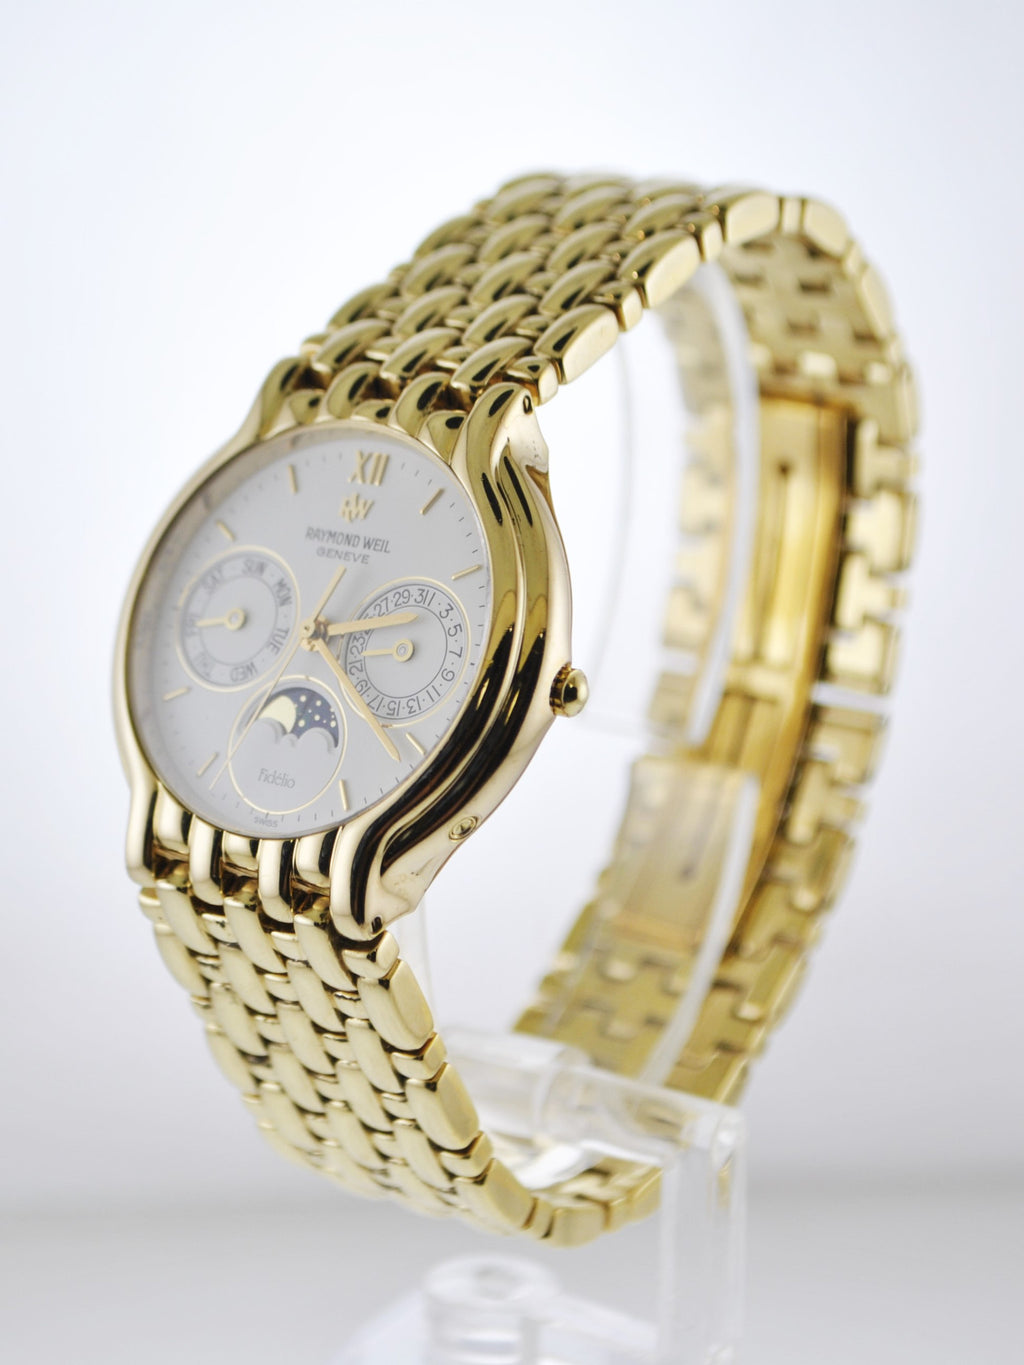 Raymond Weil Fidelio Men's Wristwatch in Yellow Gold - $5K VALUE